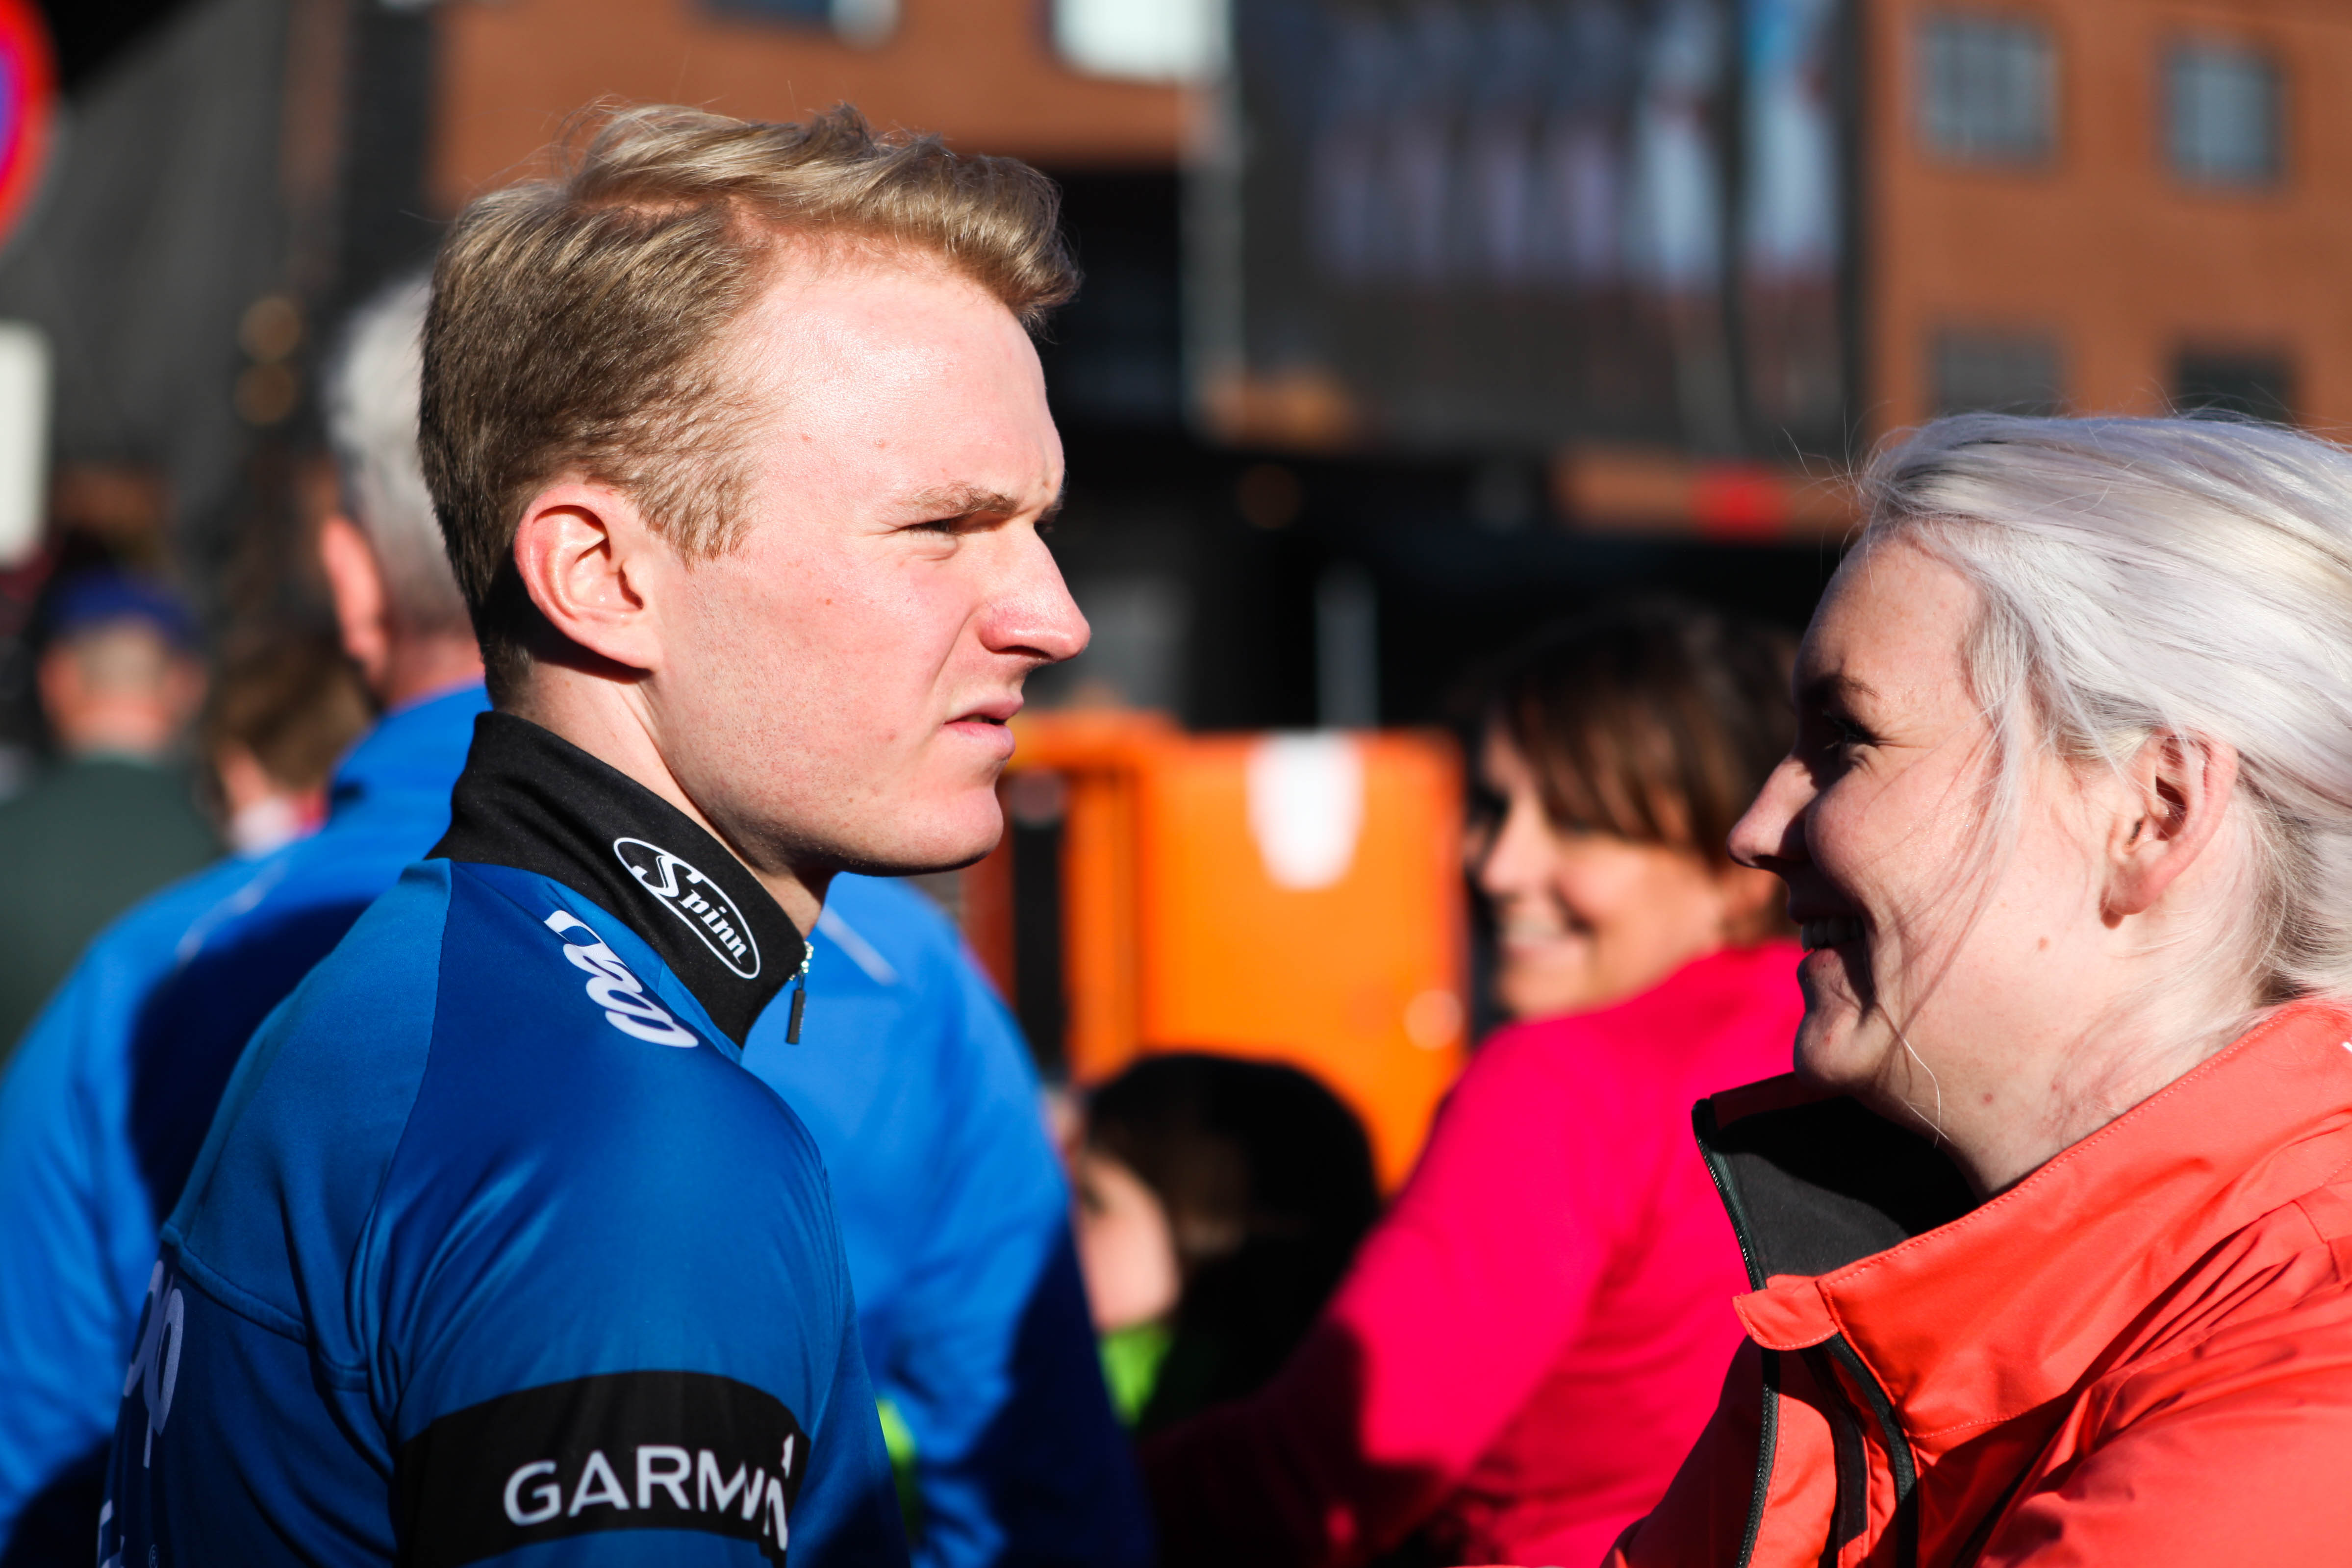 Meg og min kjære: Jensen og kjæresten i forkant av Arctic Race i år. Foto: Kjetil R. Anda / Sykkelmagasinet